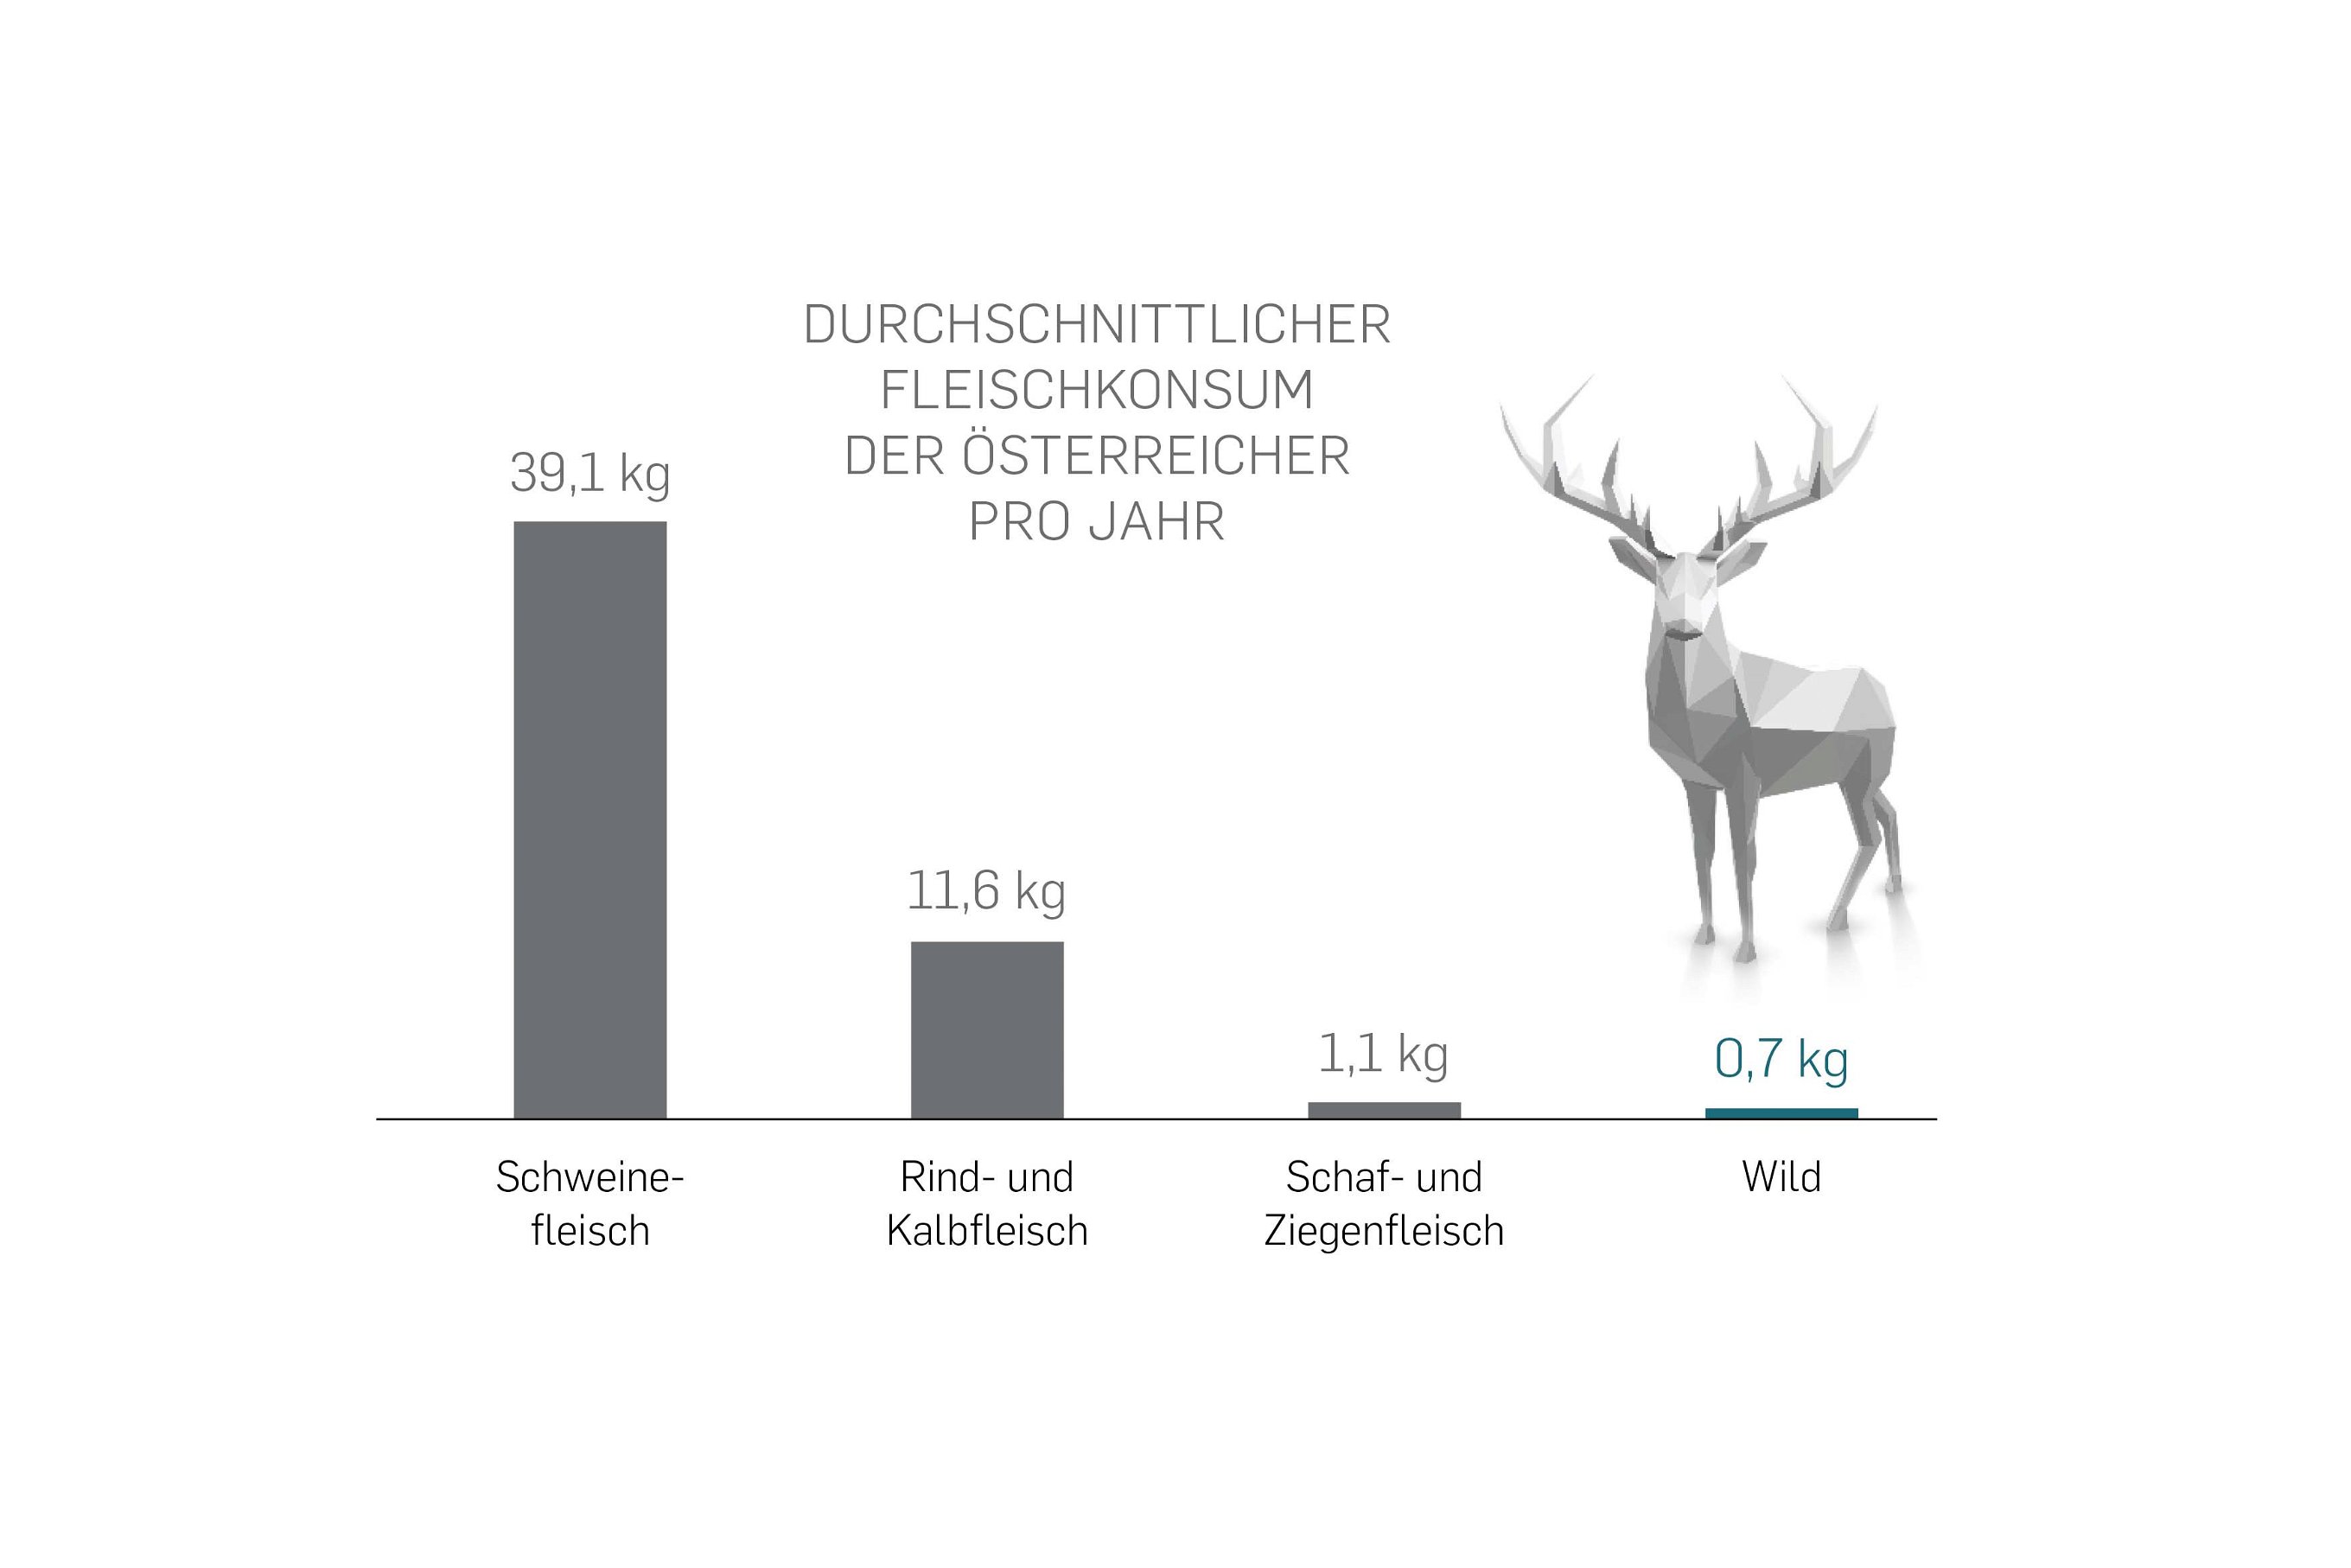 Jährlich durchschnittlicher Fleischkonsum der Österreicher.